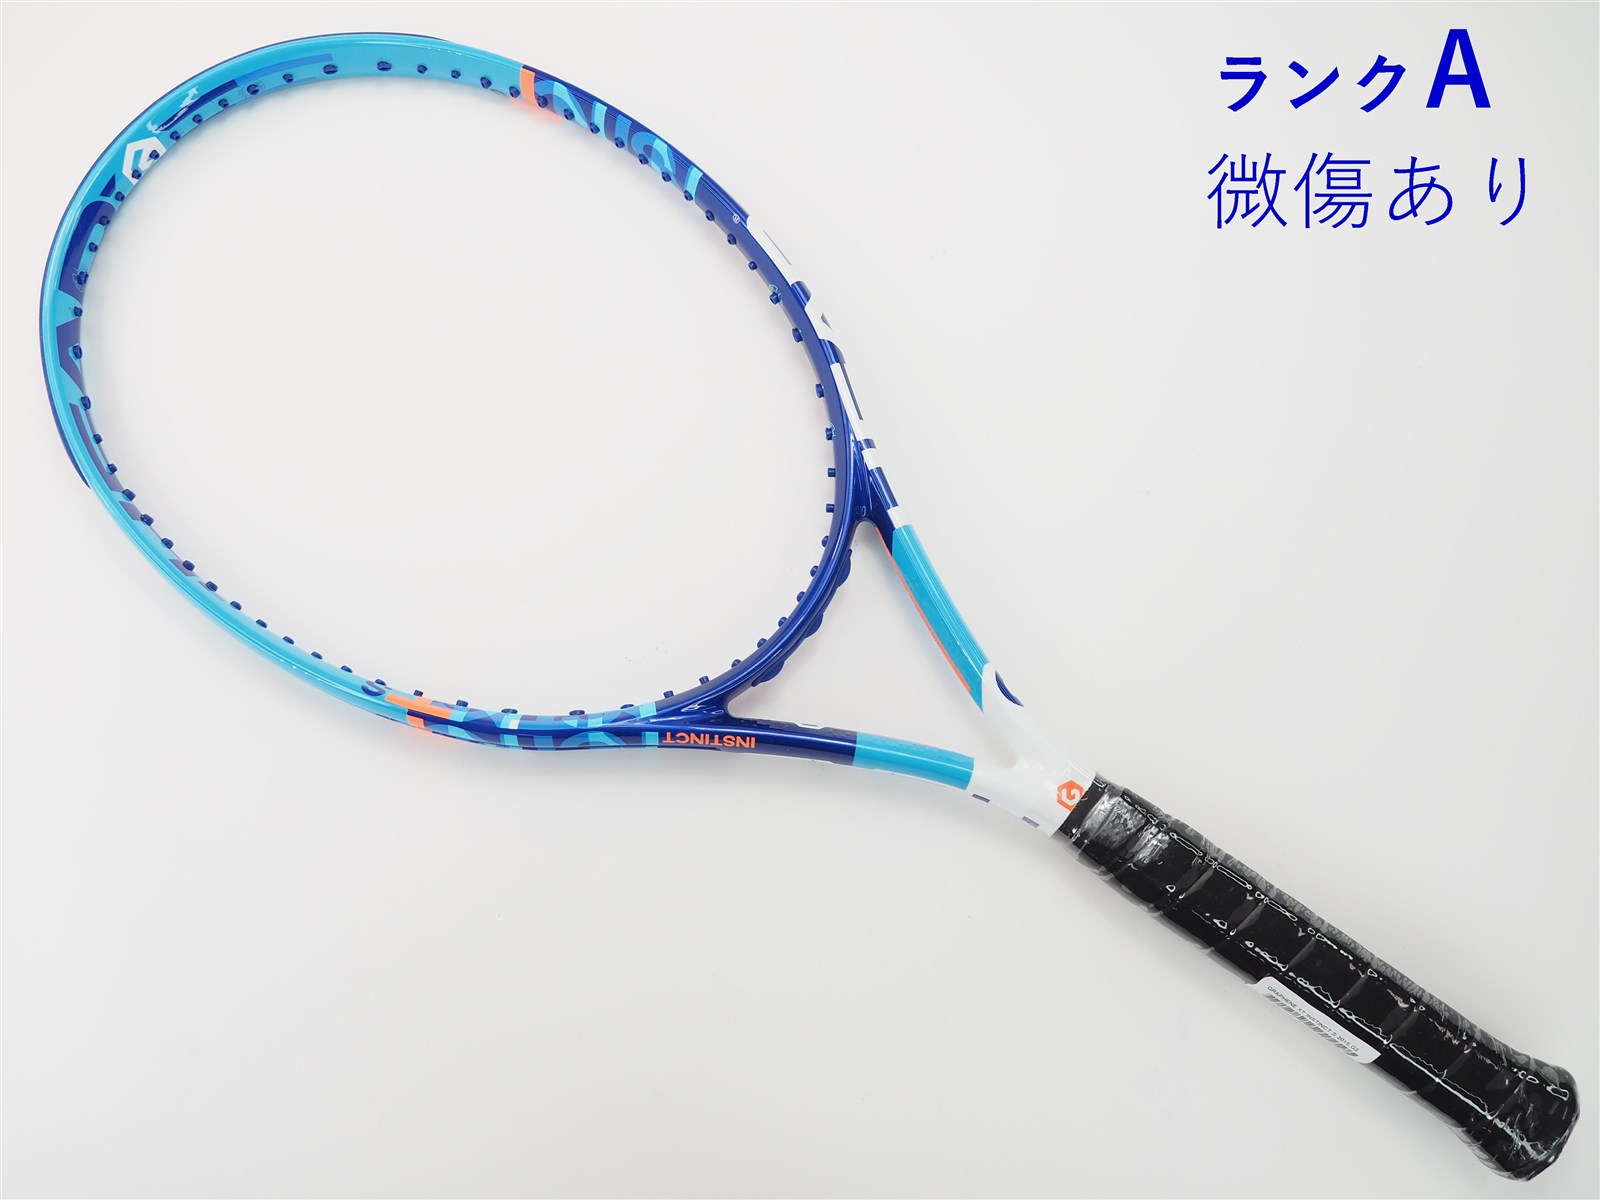 107平方インチ長さテニスラケット ブリヂストン ビーム OS 295 2017年モデル (G3)BRIDGESTONE BEAM-OS 295 2017